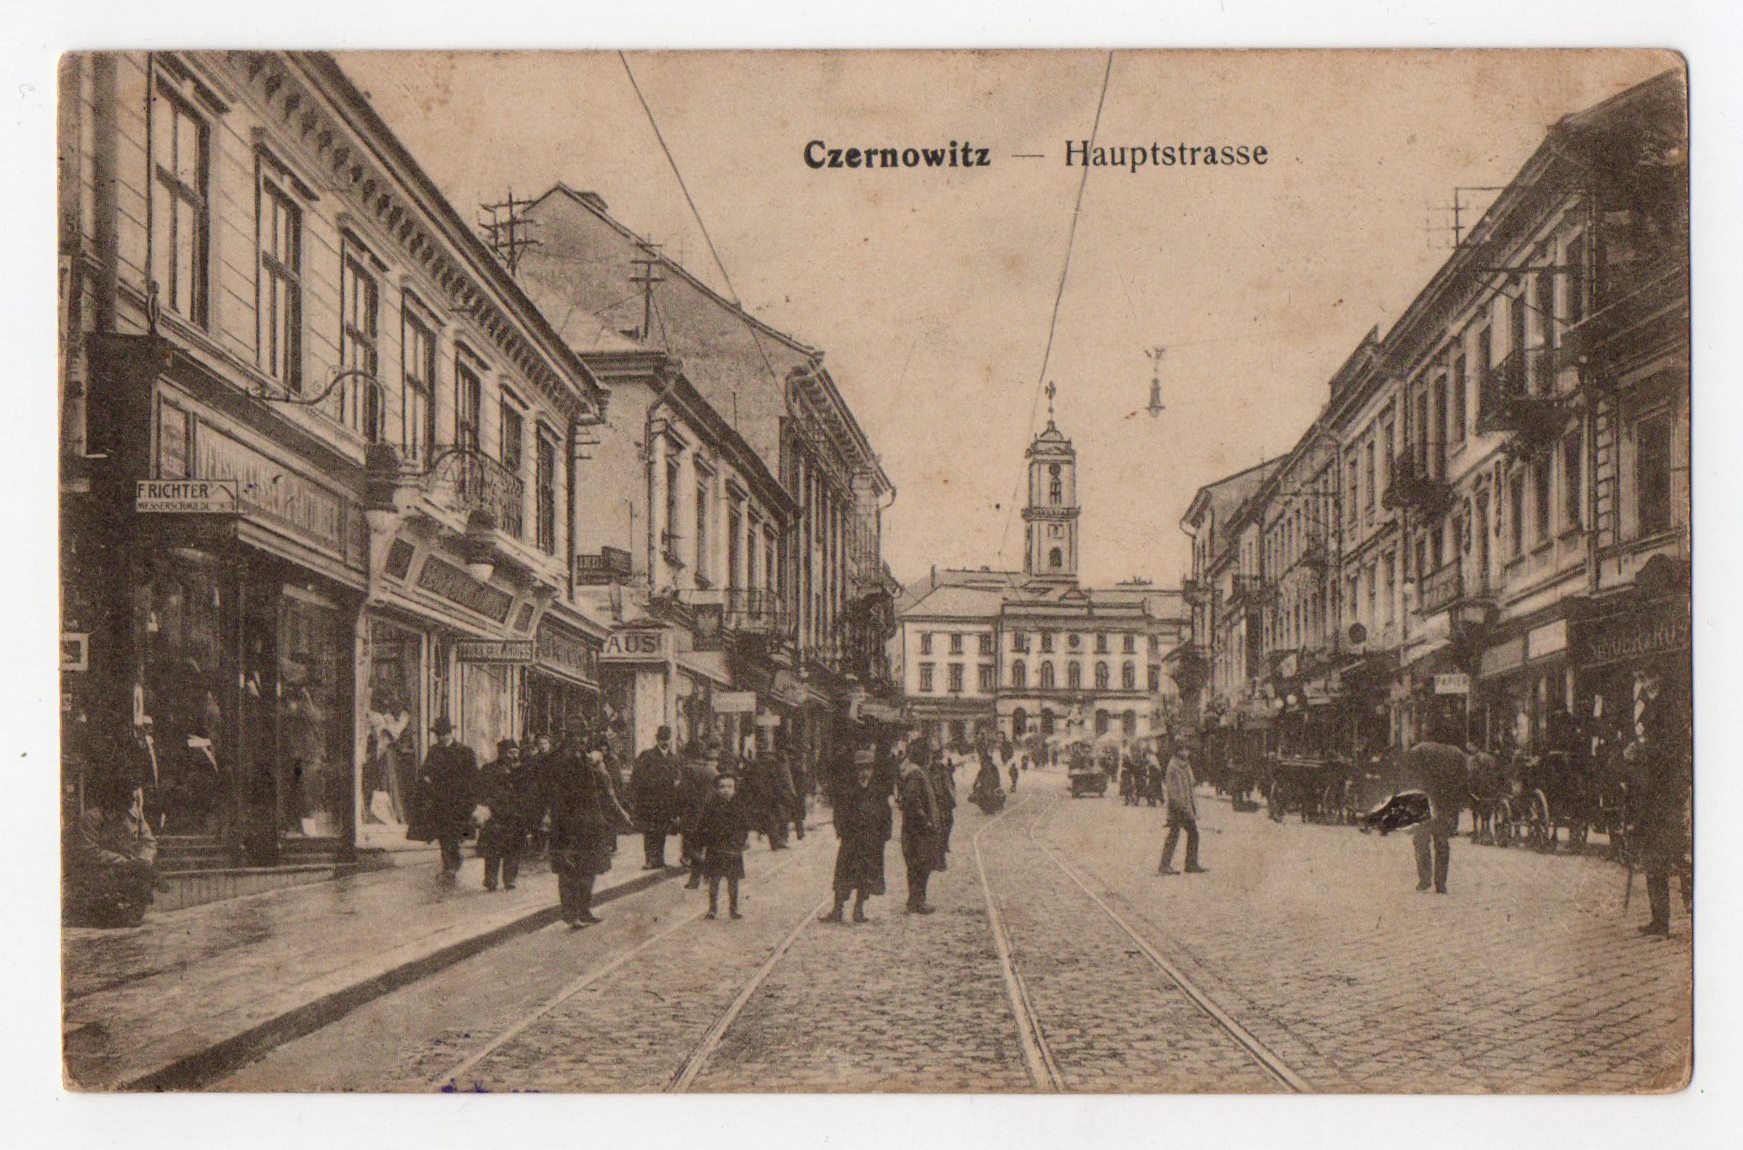 Поштова листівка. "Czernowitz - Hauptstrasse"